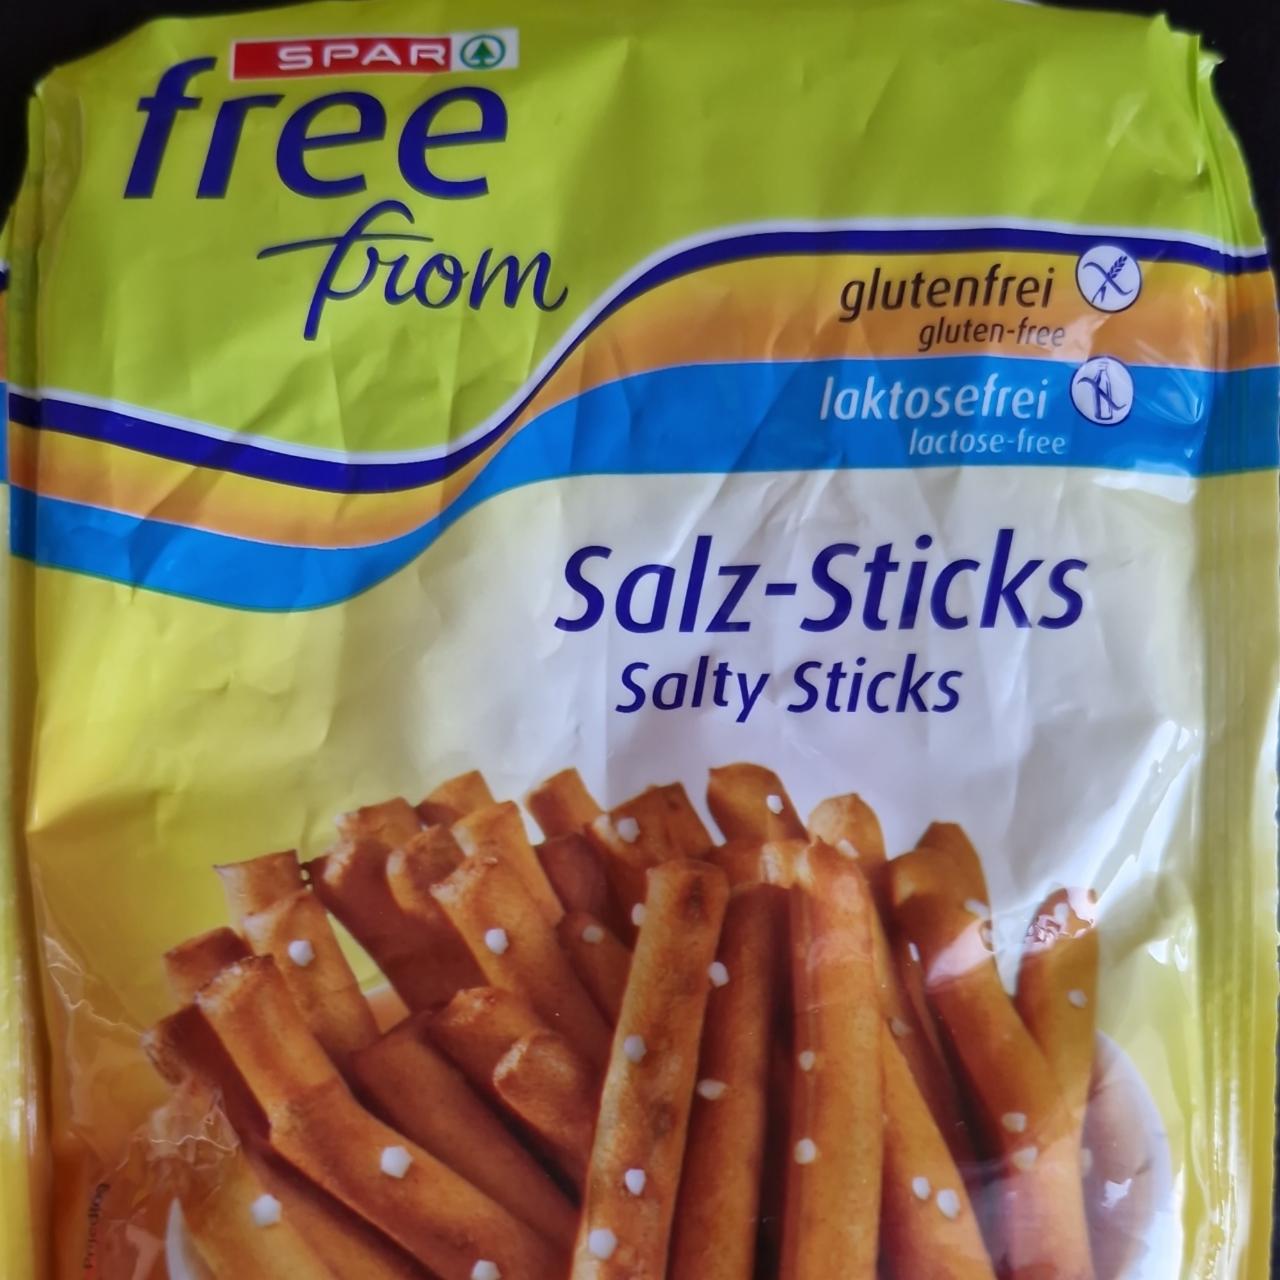 Fotografie - Salz-Sticks Spar free from